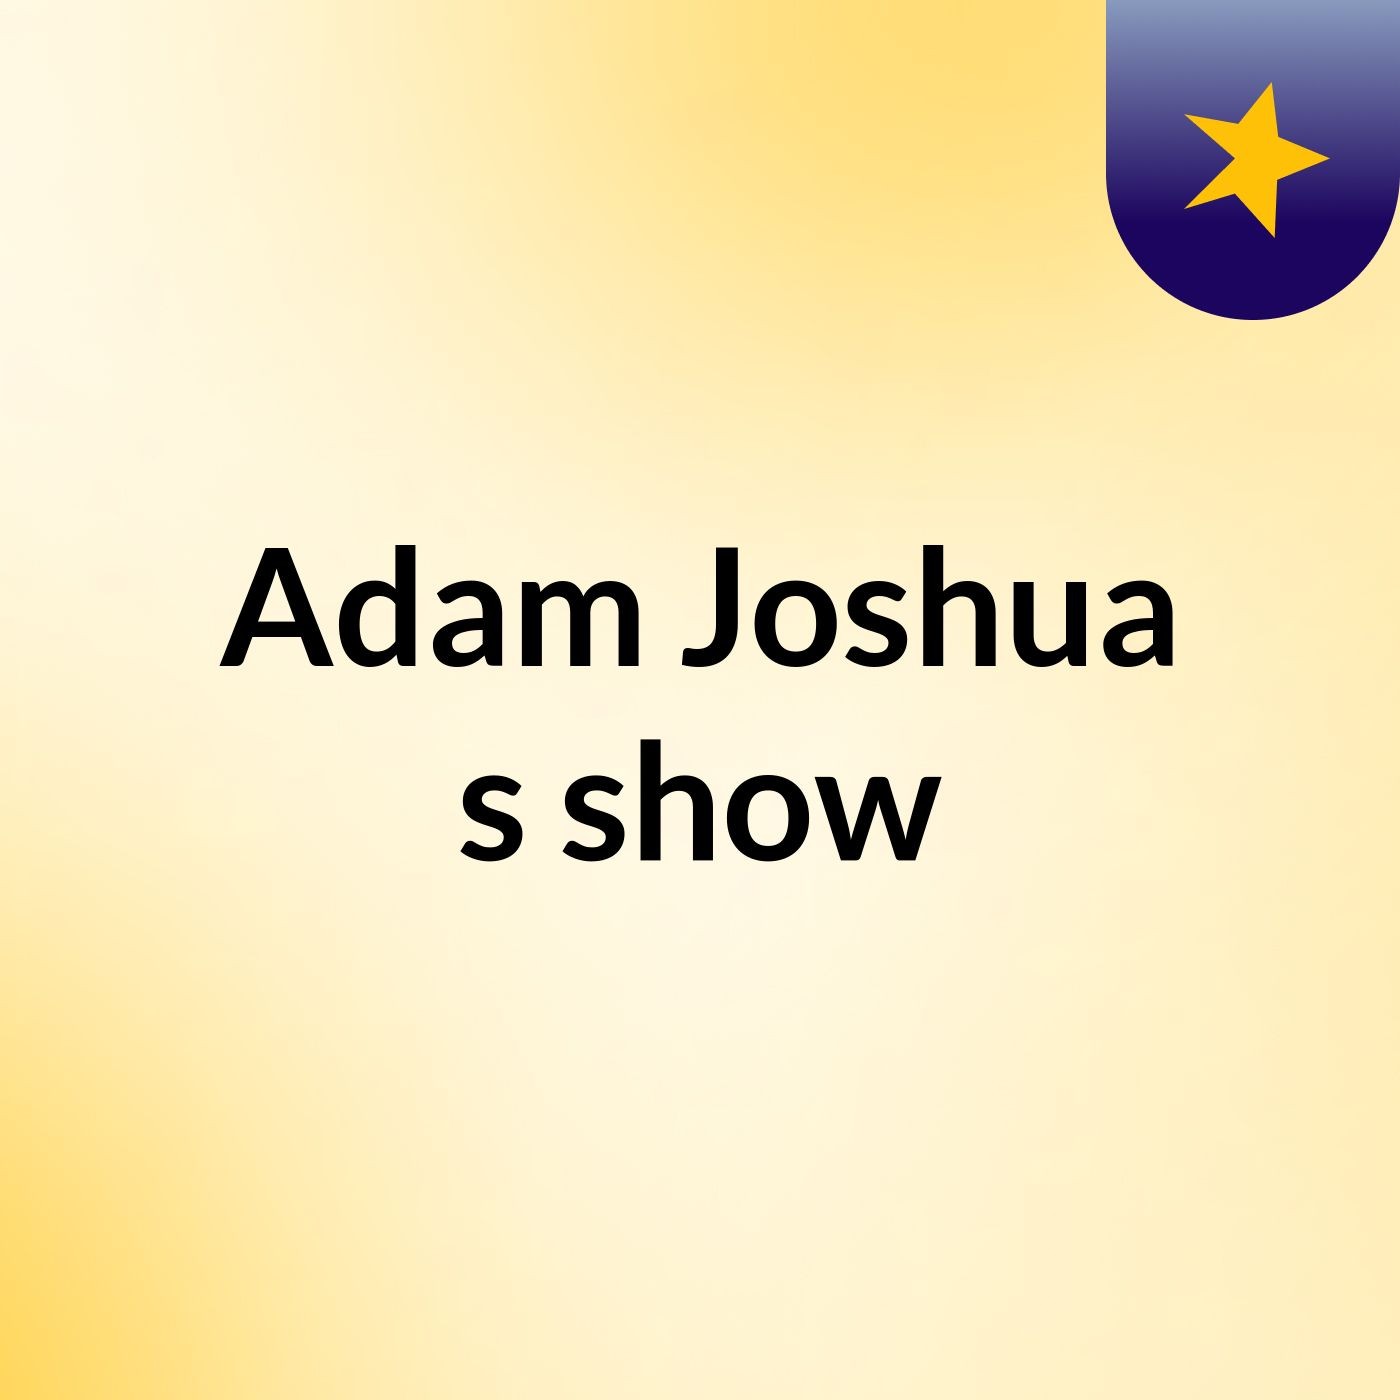 Adam Joshua's show